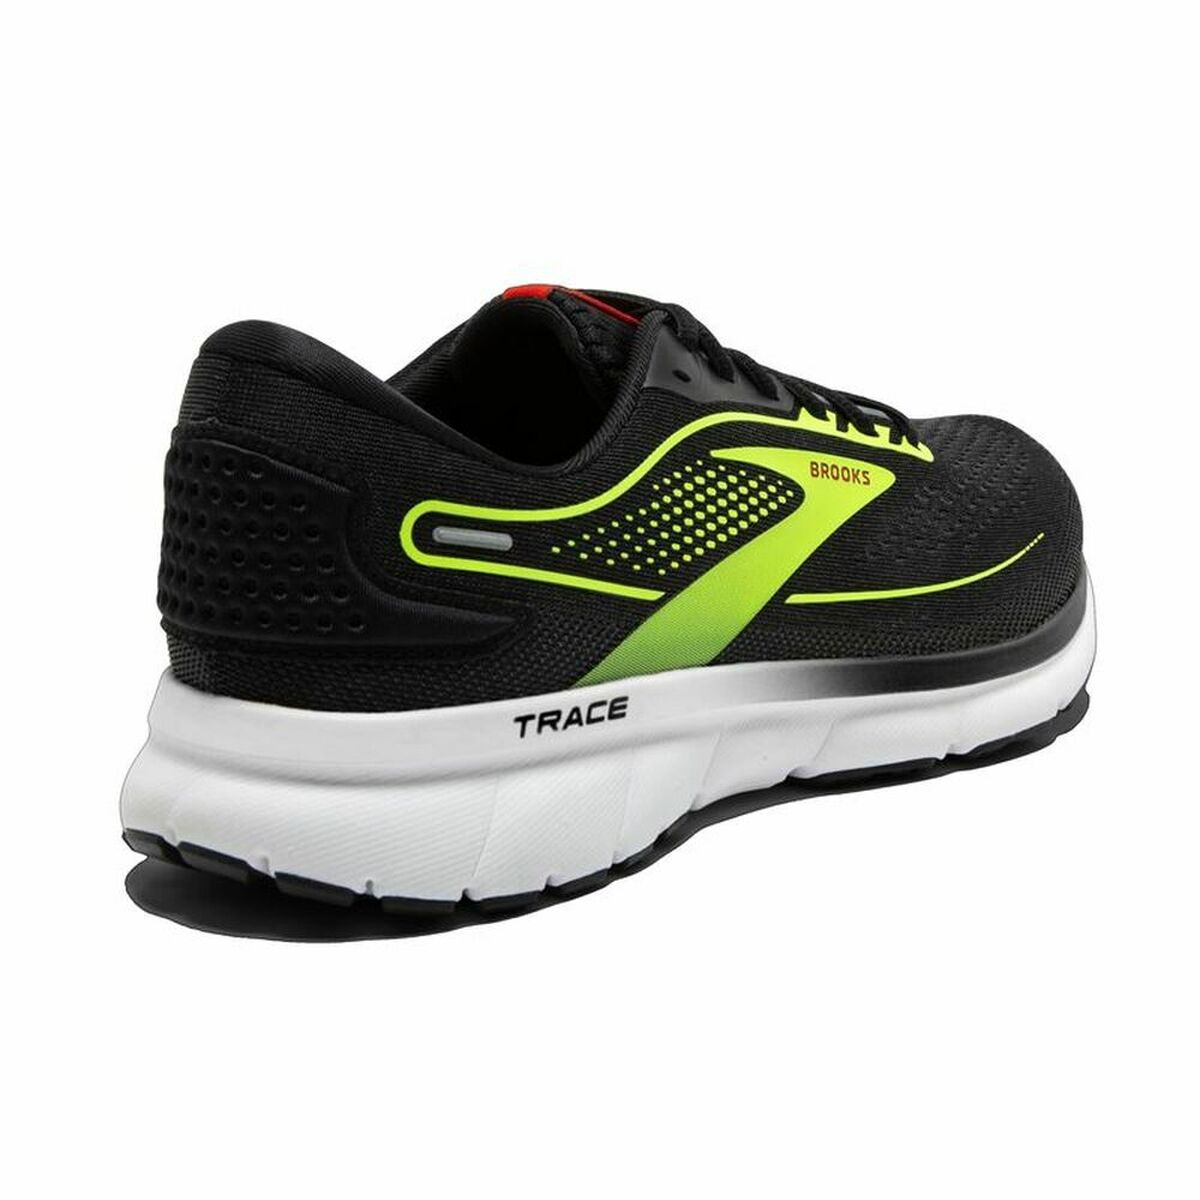 Chaussures de Running pour Adultes Trace 2 Brooks Noir